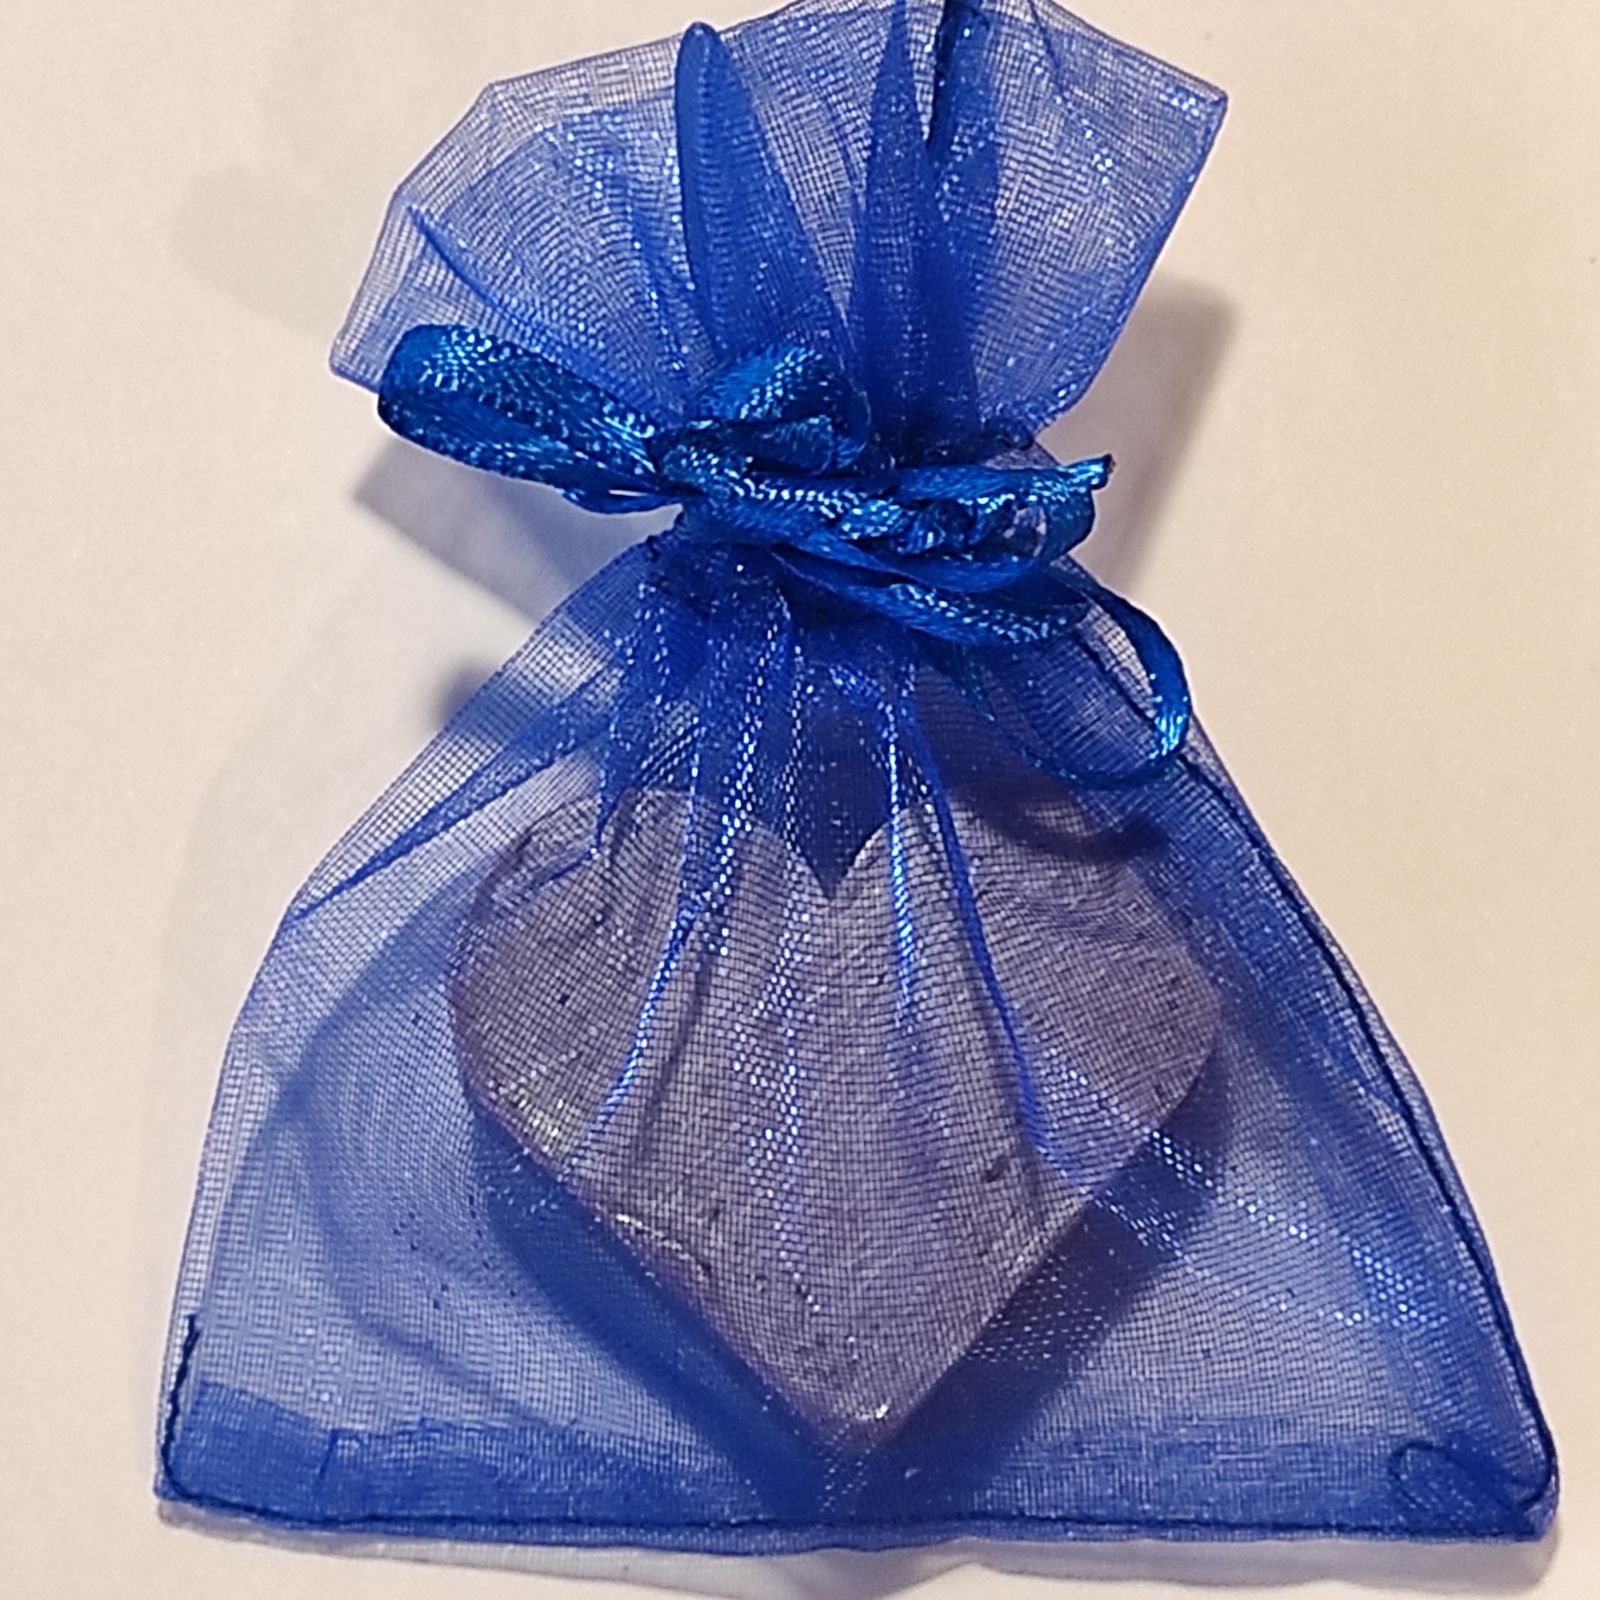 Srdíčko - Levandule 20 g - modrý sáček AWGifts